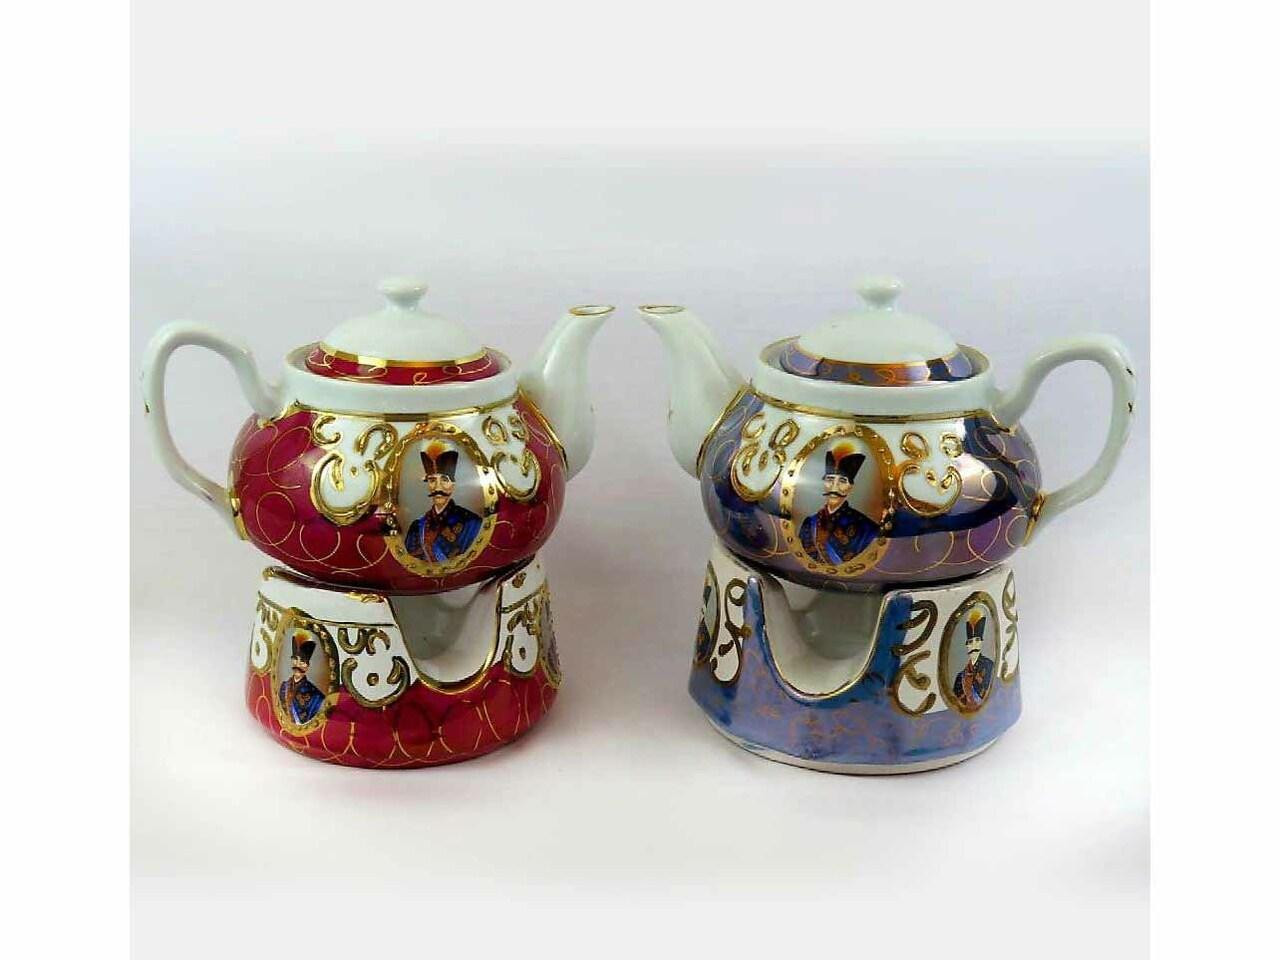 Brass teapot with built in warmer , Handmade brass Tea Pot , Unique Kitchen  Decor